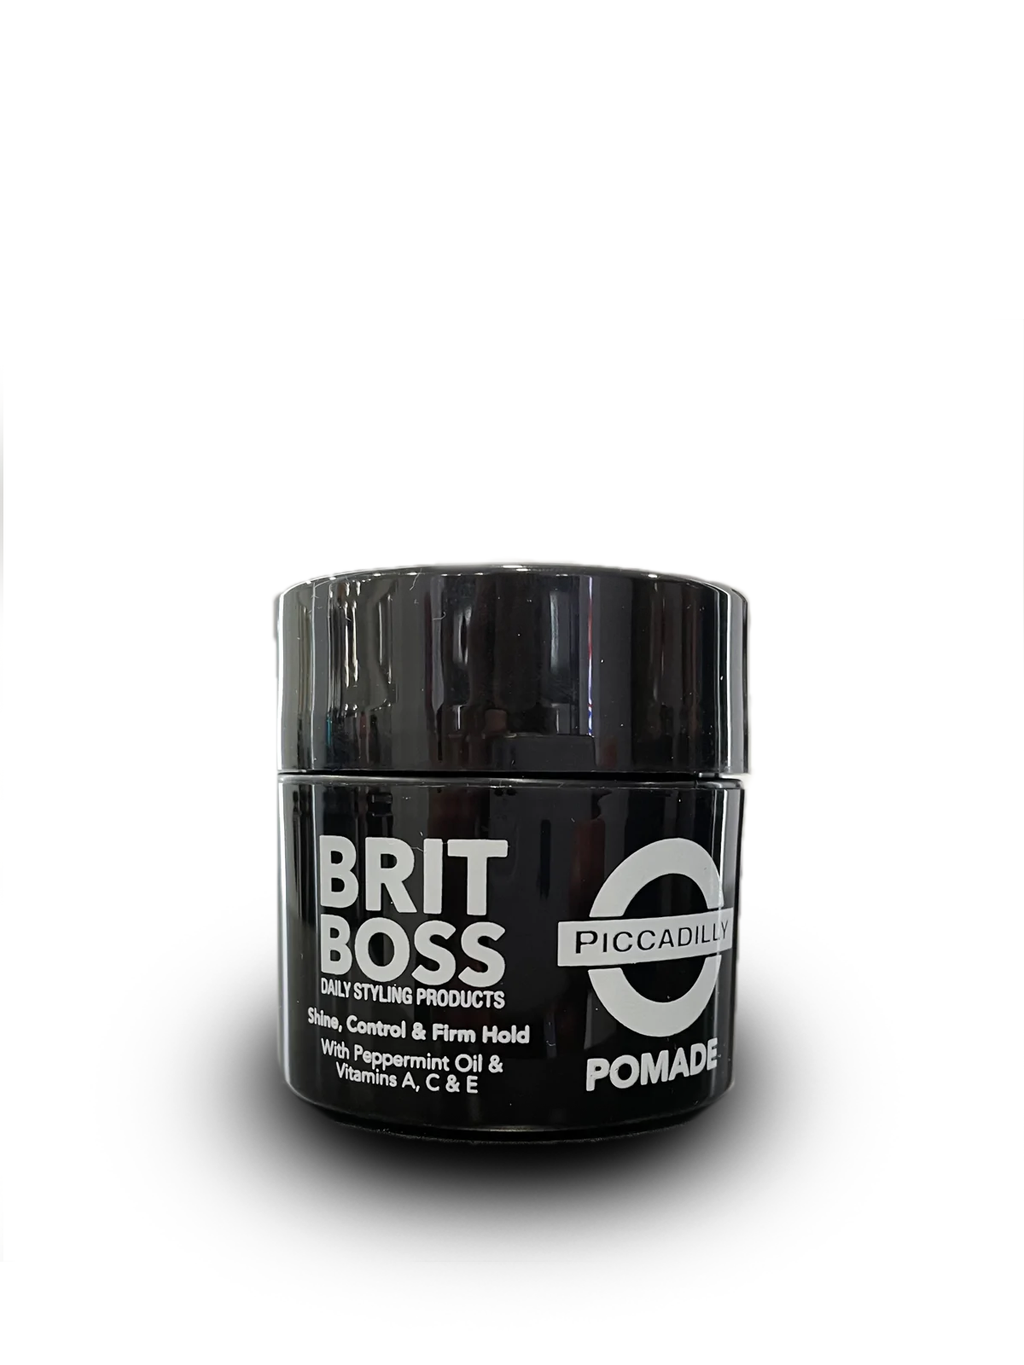 Britt Boss Hair Control Pomade with Vitamins A,C & E Peppermint Oil 2 oz.